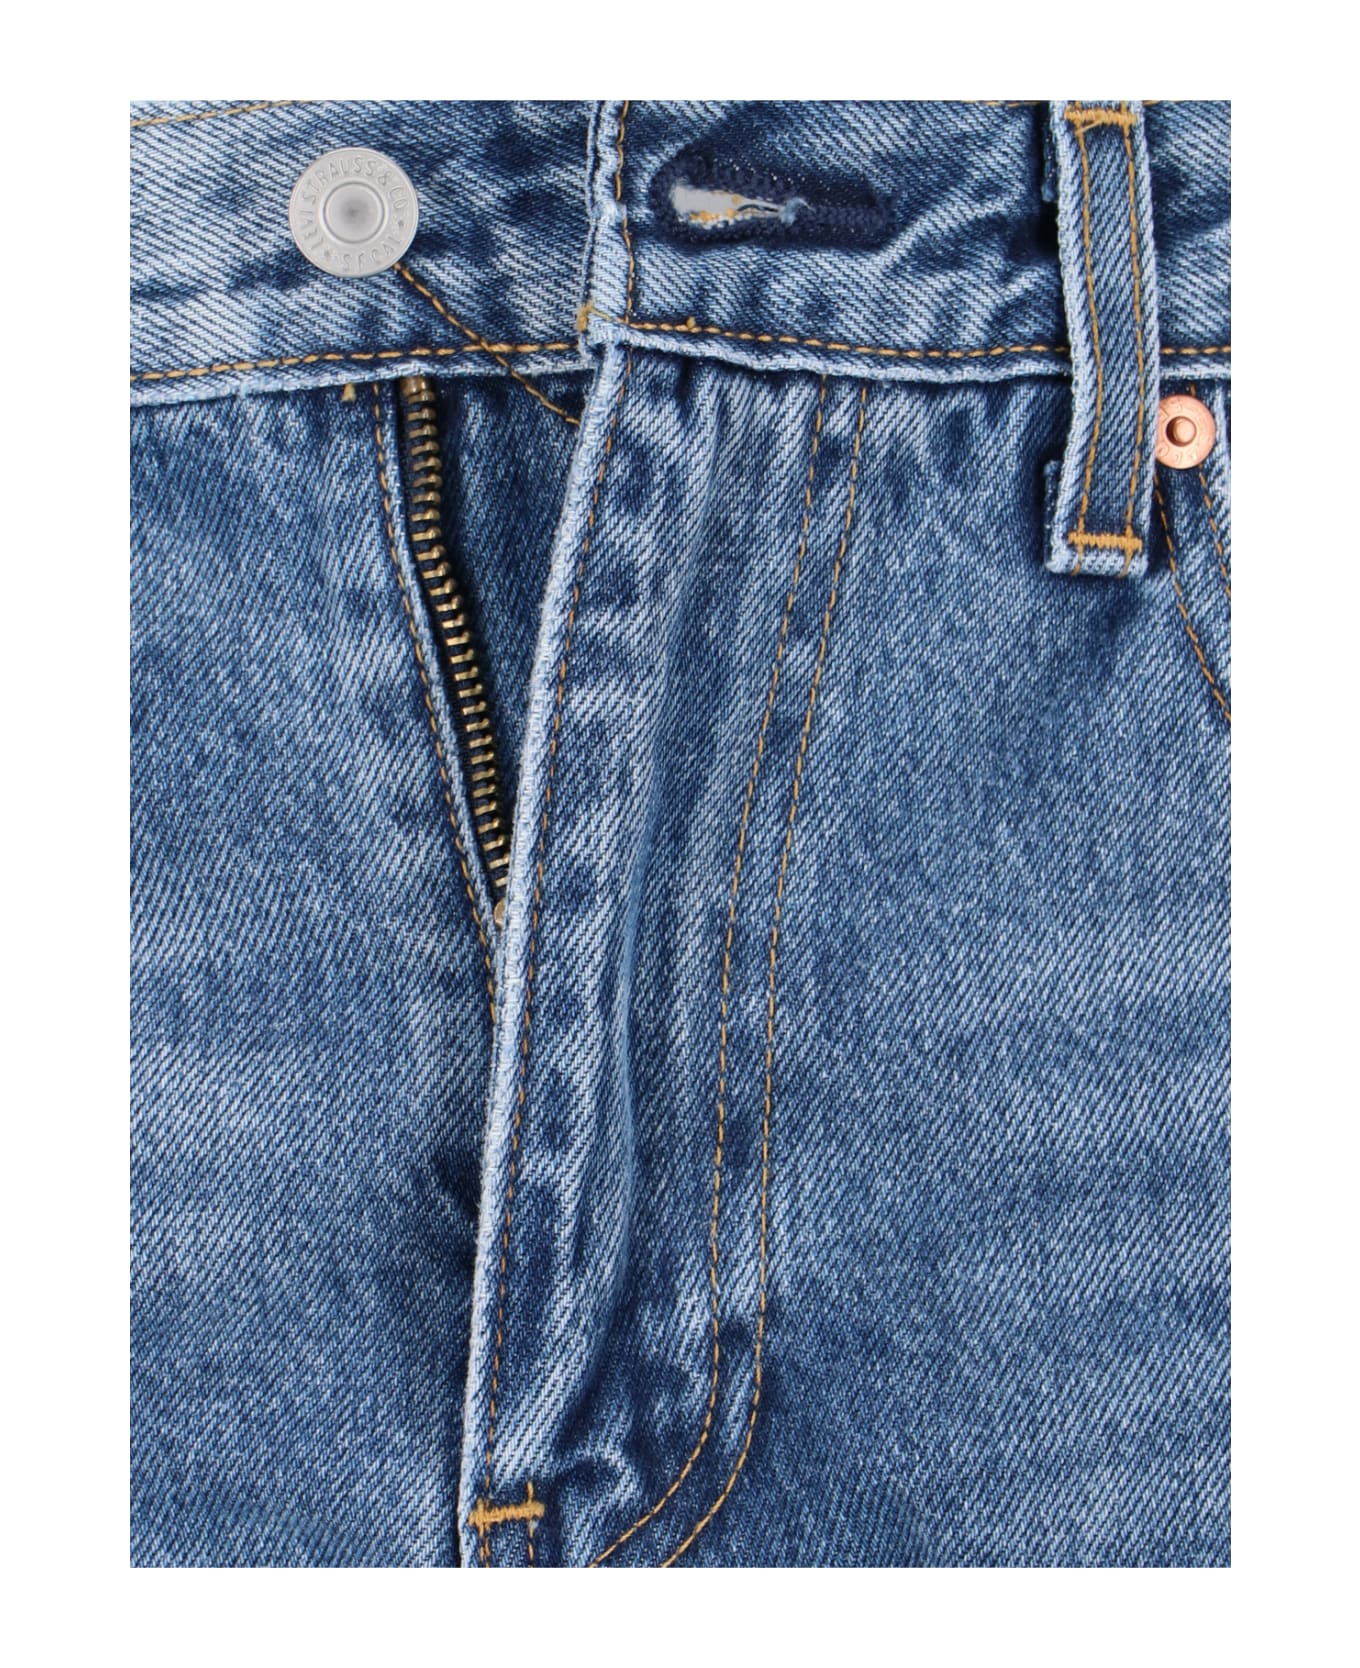 Levi's '517 ' Bootcut Jeans - Blue